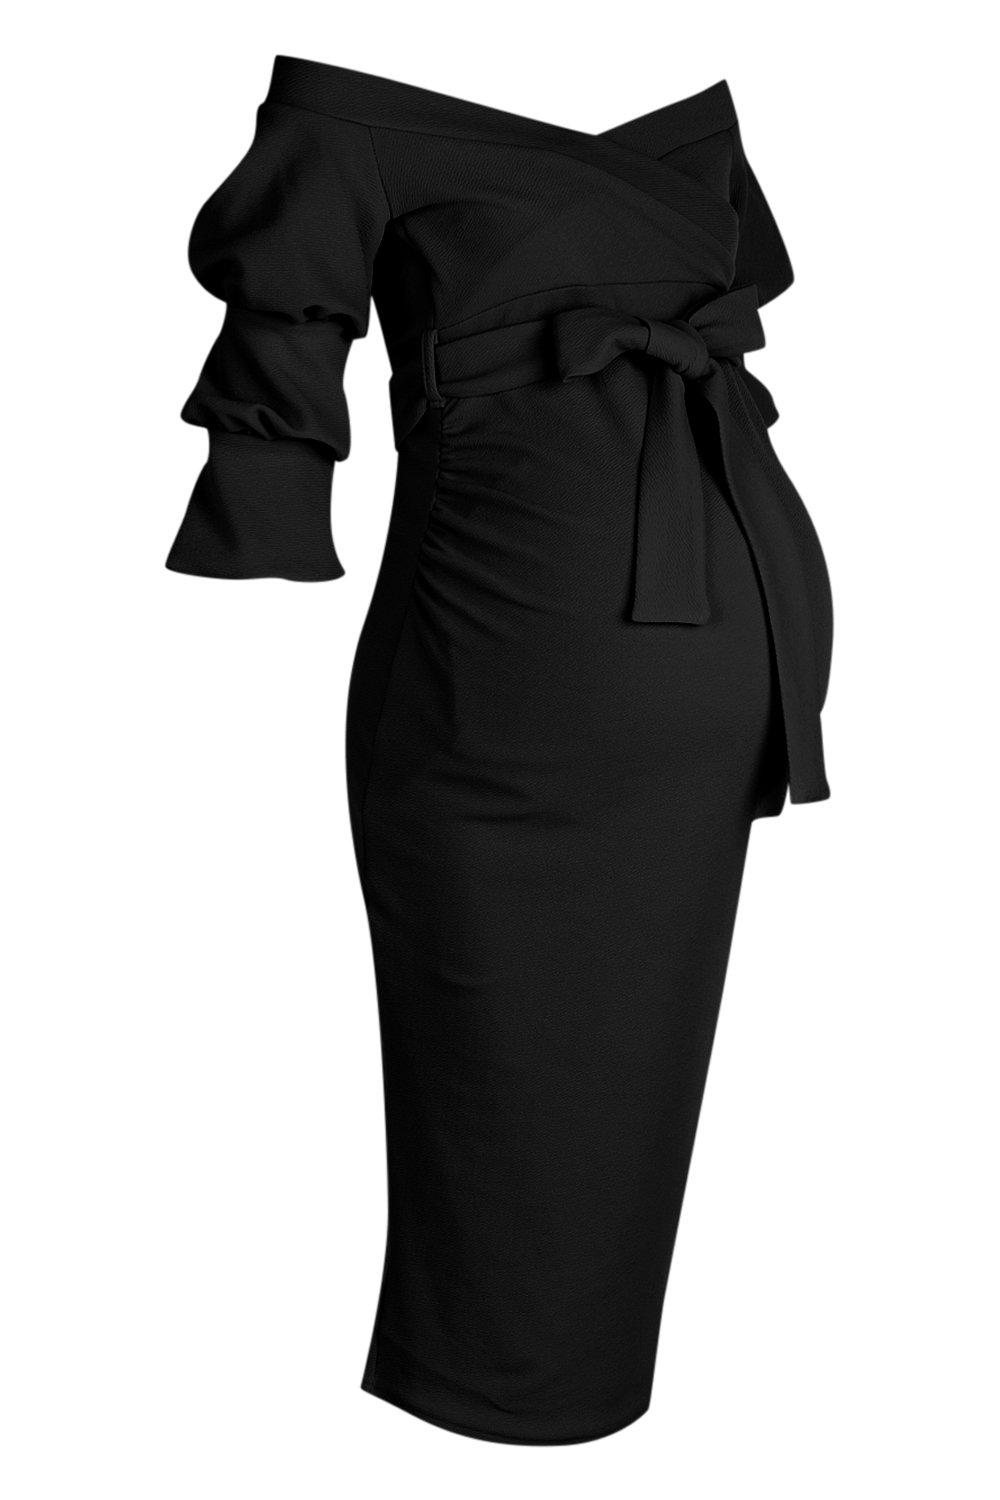 black-maternity-dress2 - MEMORANDUM